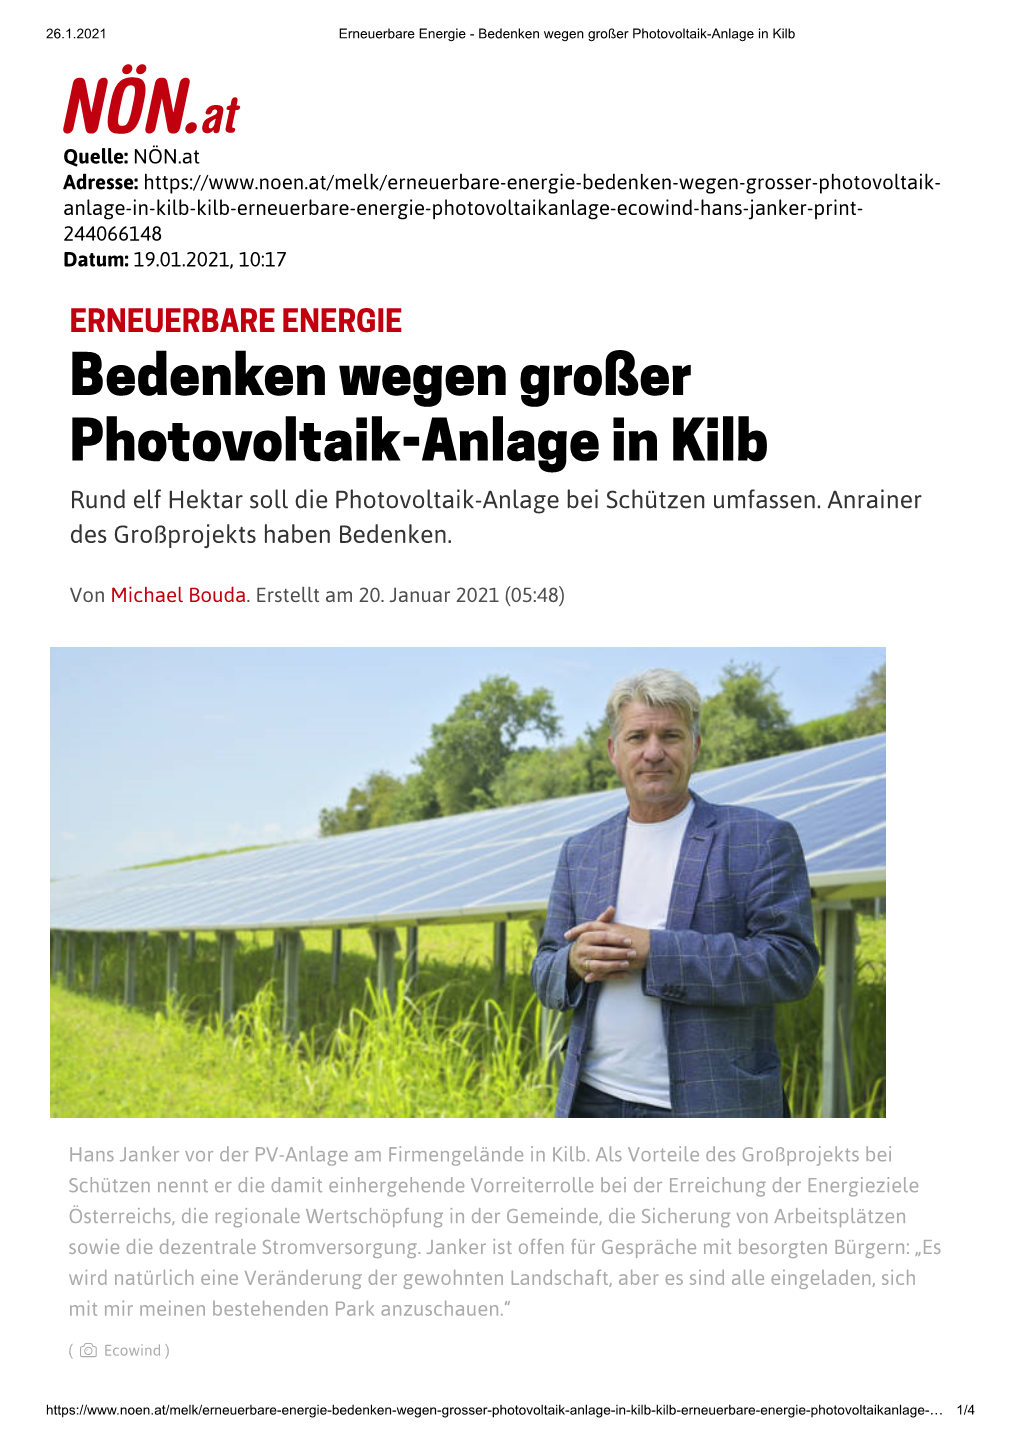 Bedenken Wegen Großer Photovoltaik-Anlage in Kilb